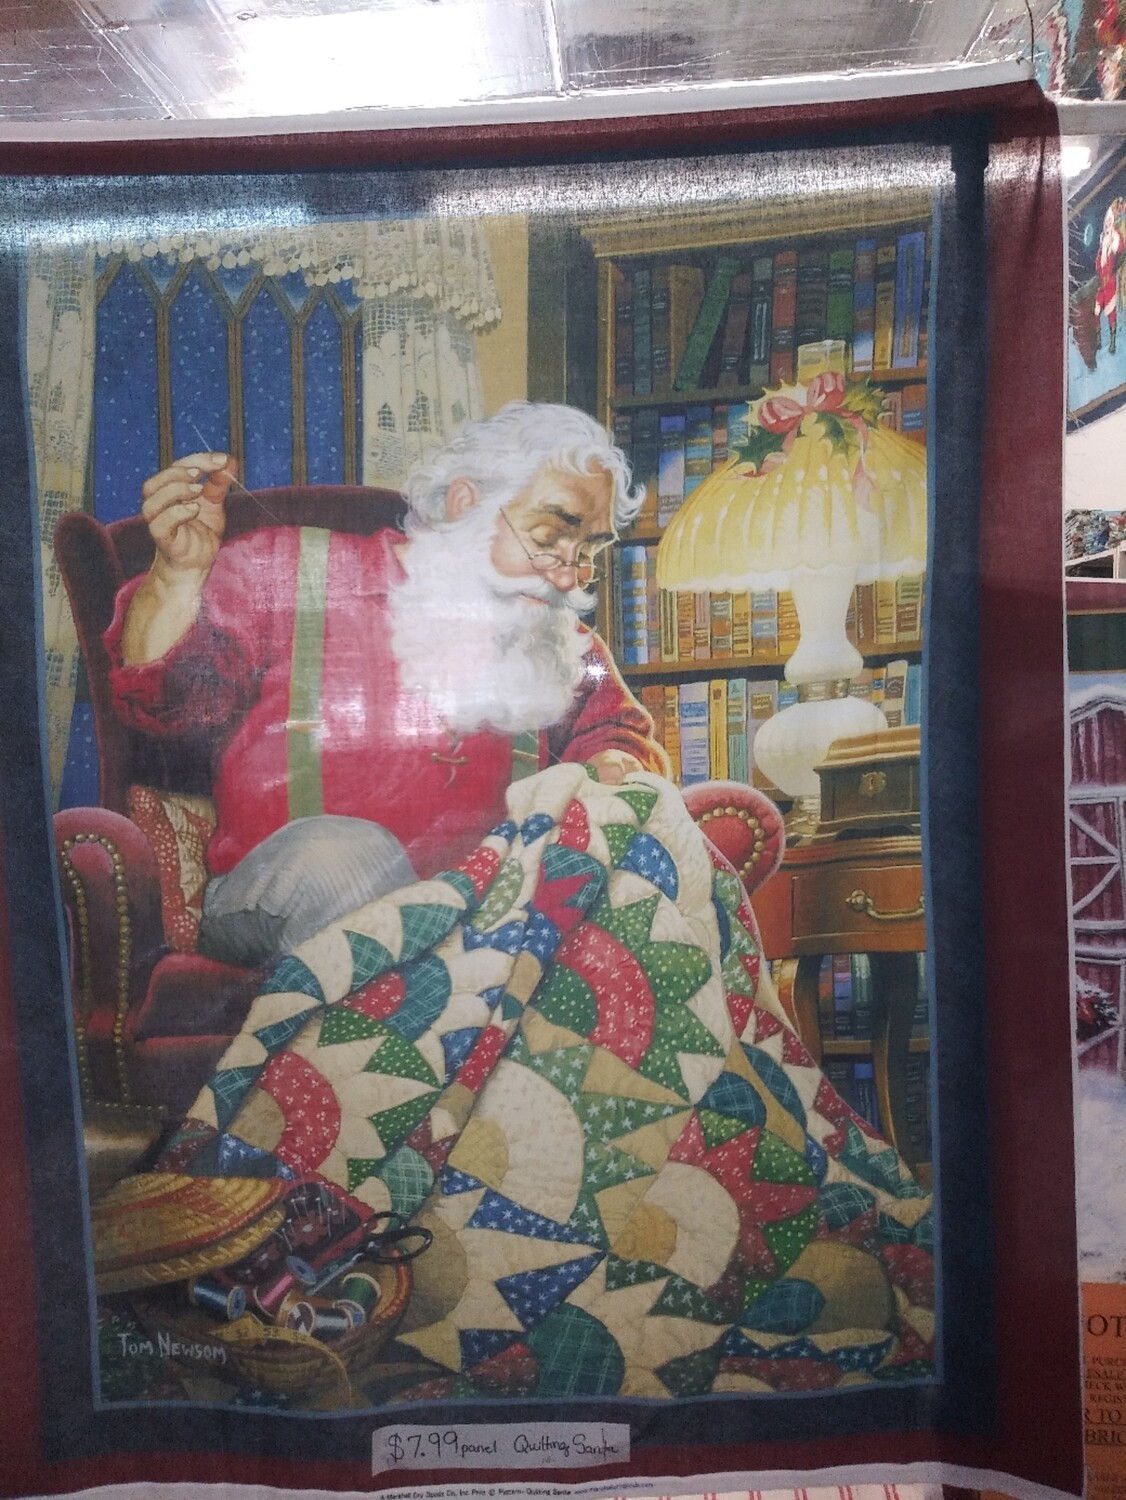 Quilting Santa Panel, Approx 36"w x 44" l